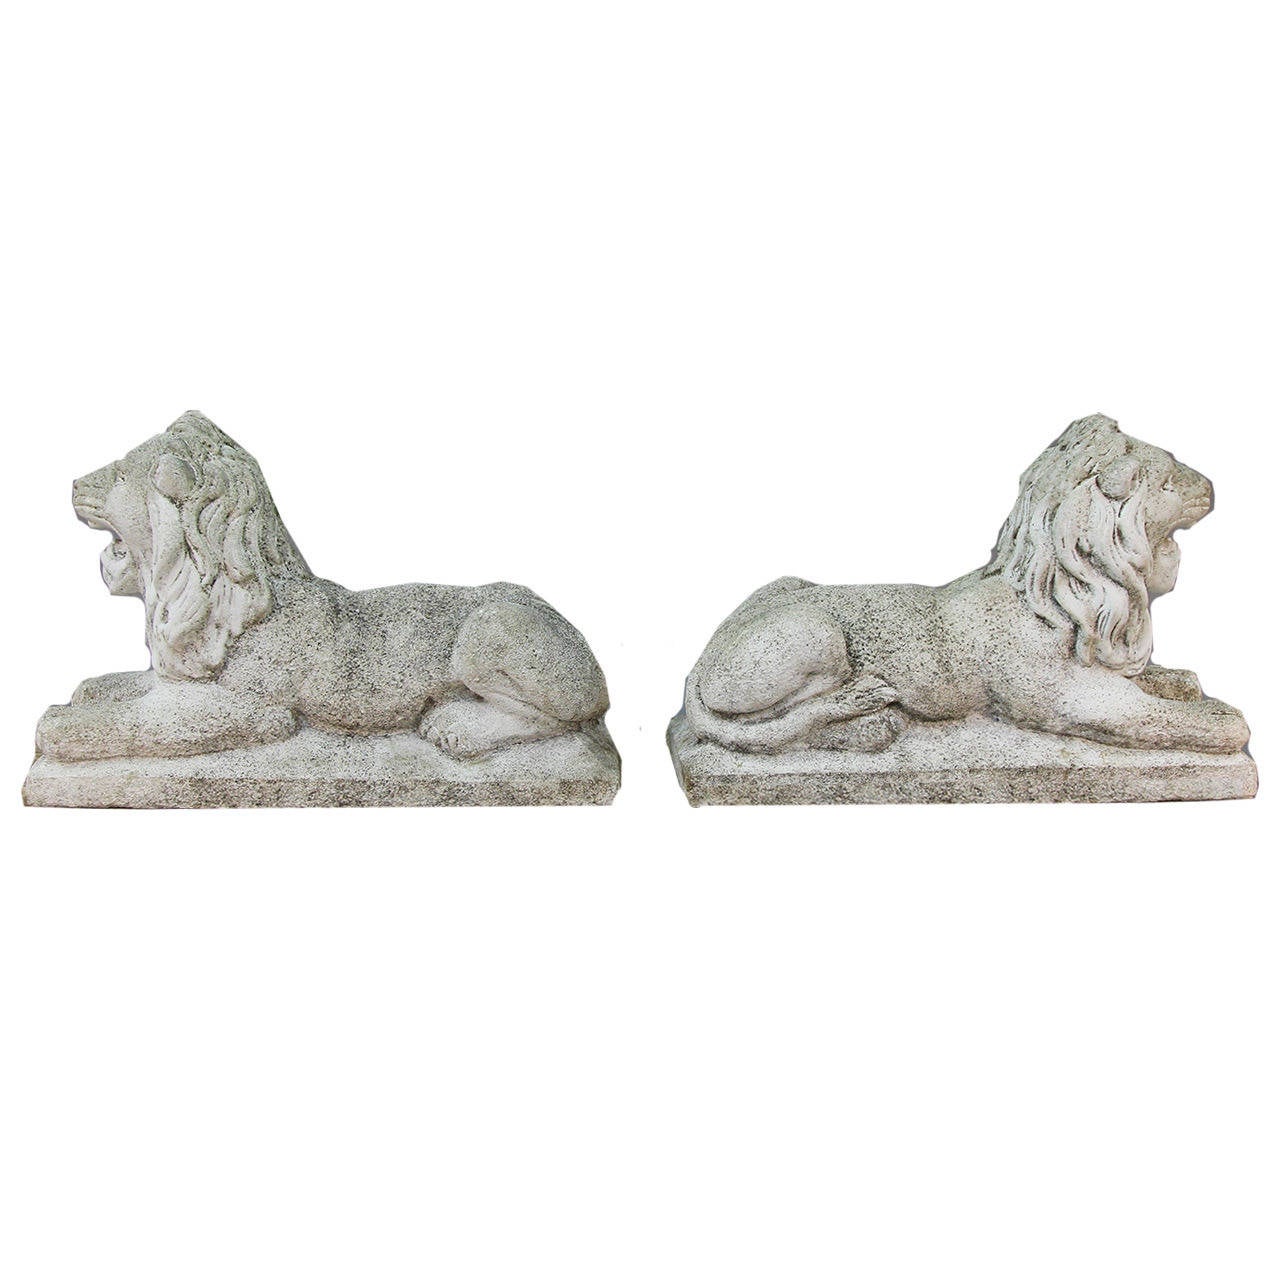 Concrete Imposing Pair of Recumbent Cast Statuary Lions